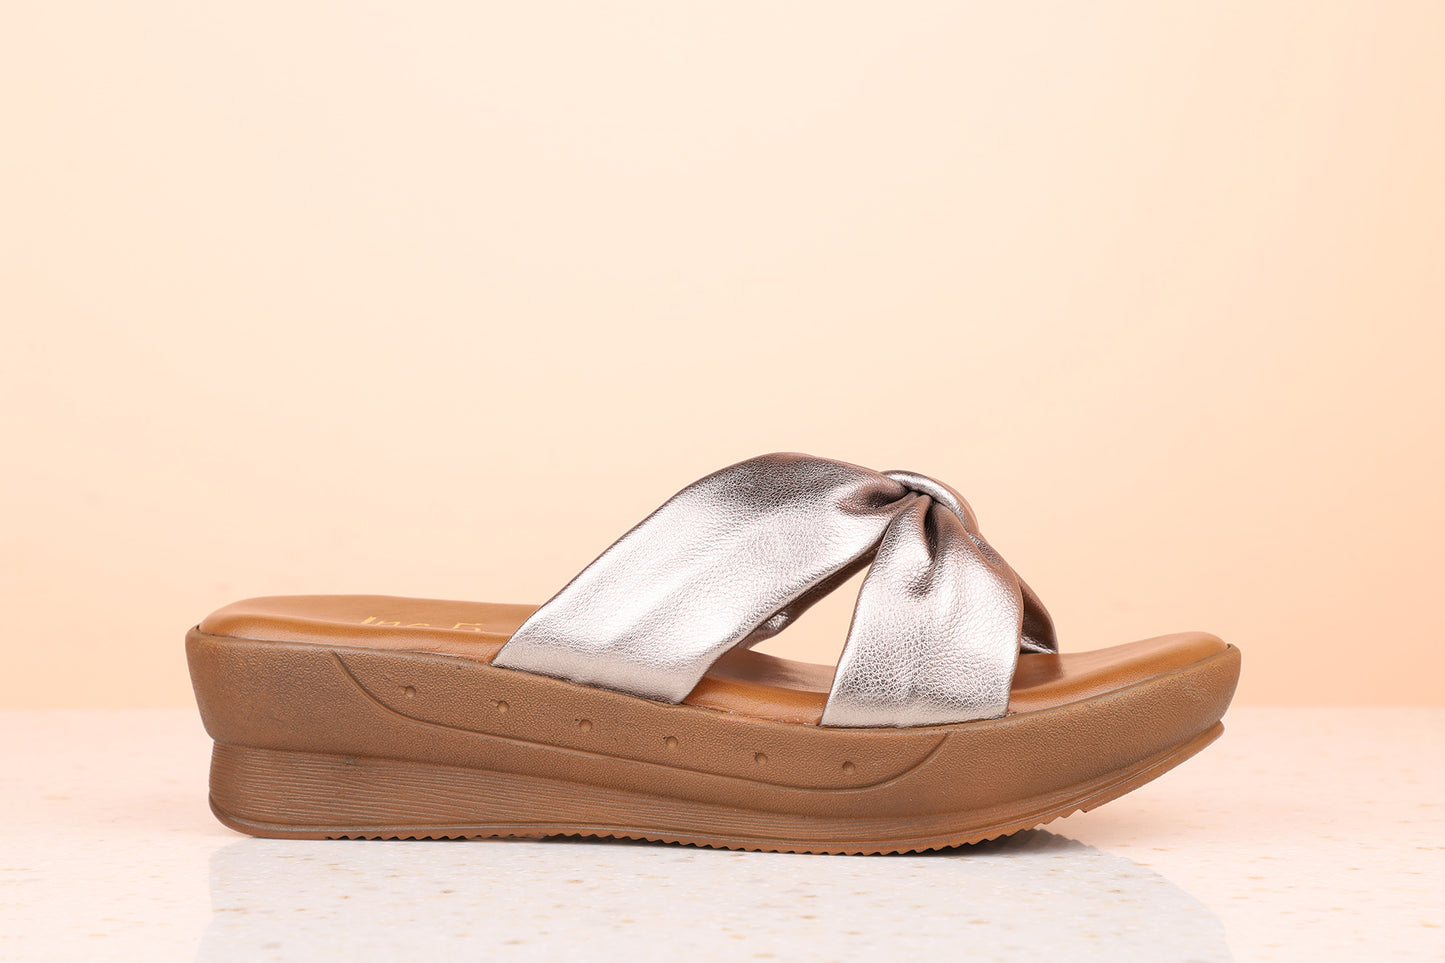 PLATFORM MULES-Women's Mules-Inc5 Shoes